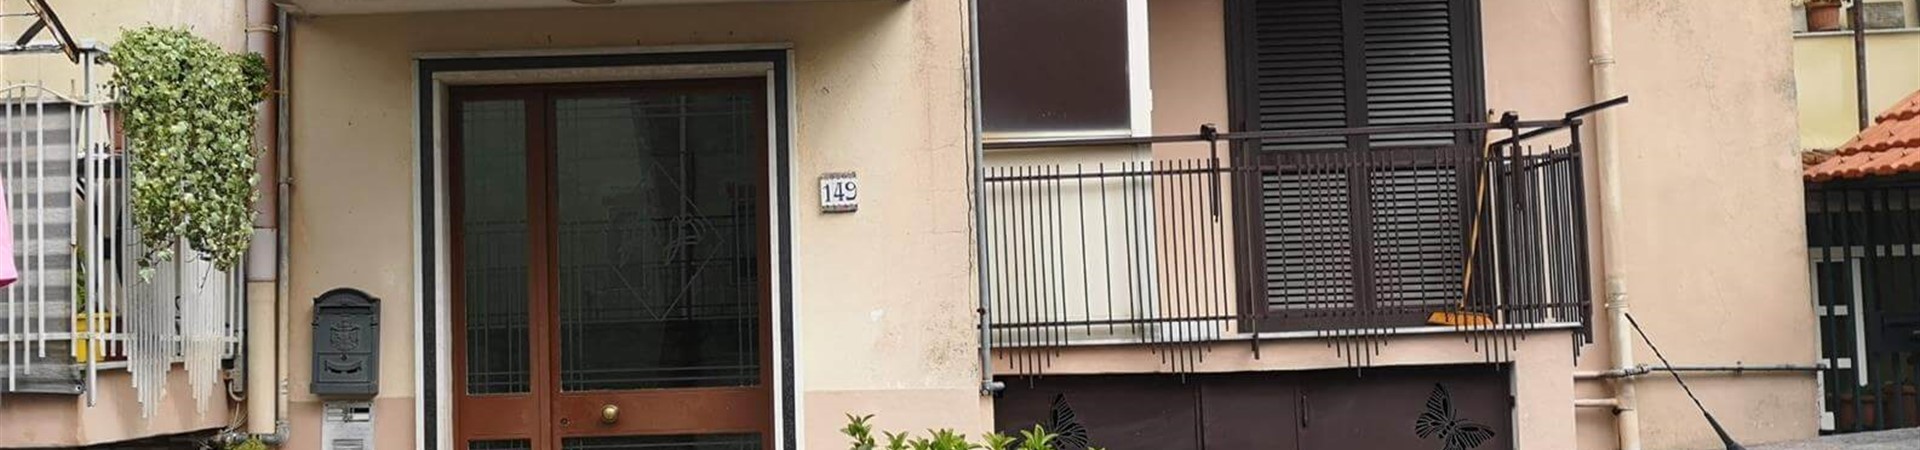 Appartamento in vendita 75 mq Via Marano Pianura - Marano di Napoli